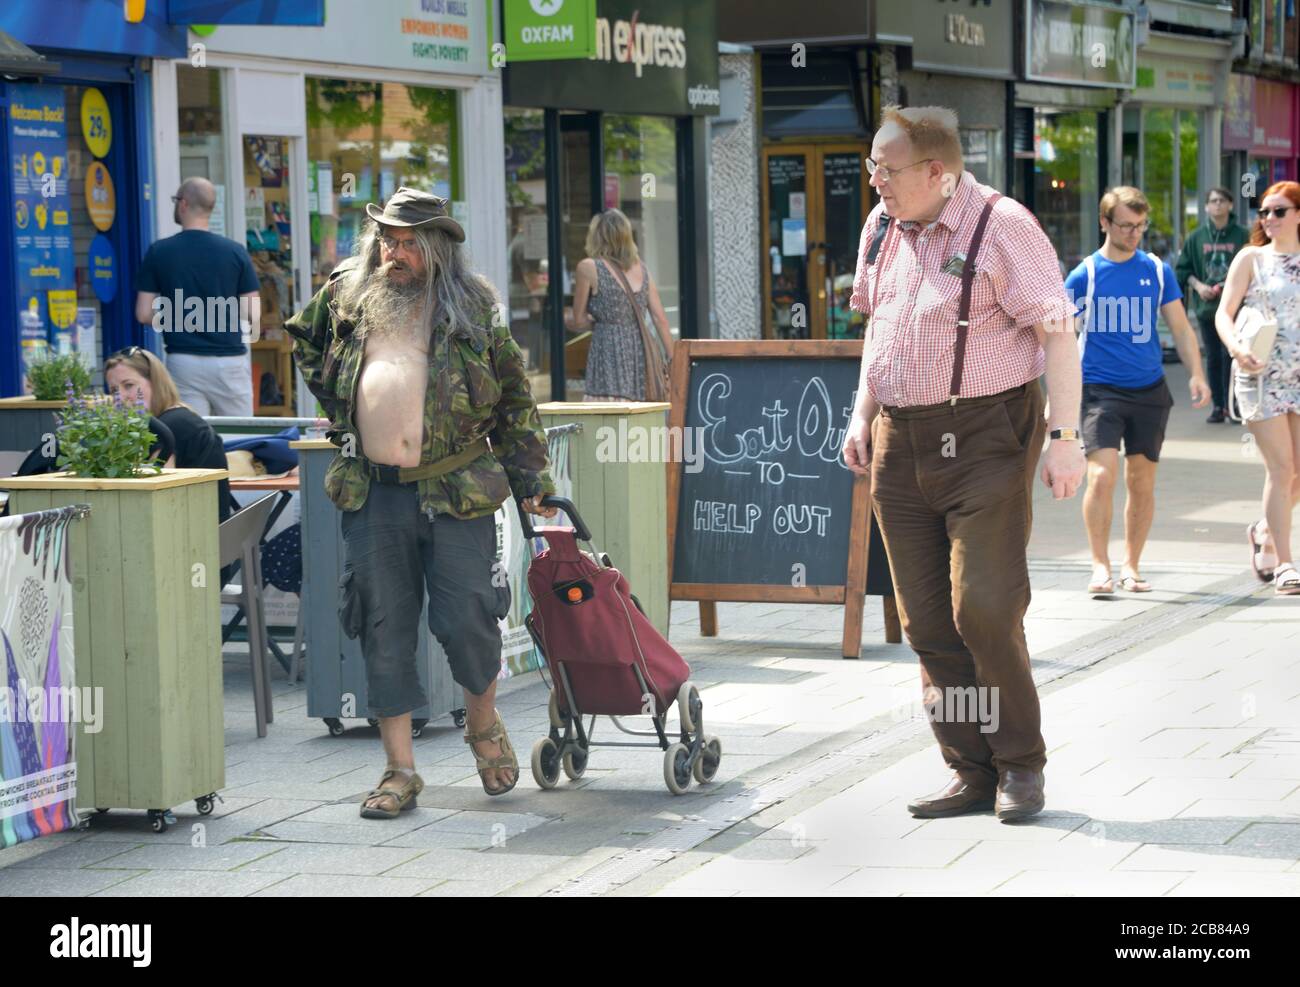 Zerzaust aussehender alter Mann, der nach dem Einsperren beim Einkaufen sein Hemd geöffnet hat. Stockfoto